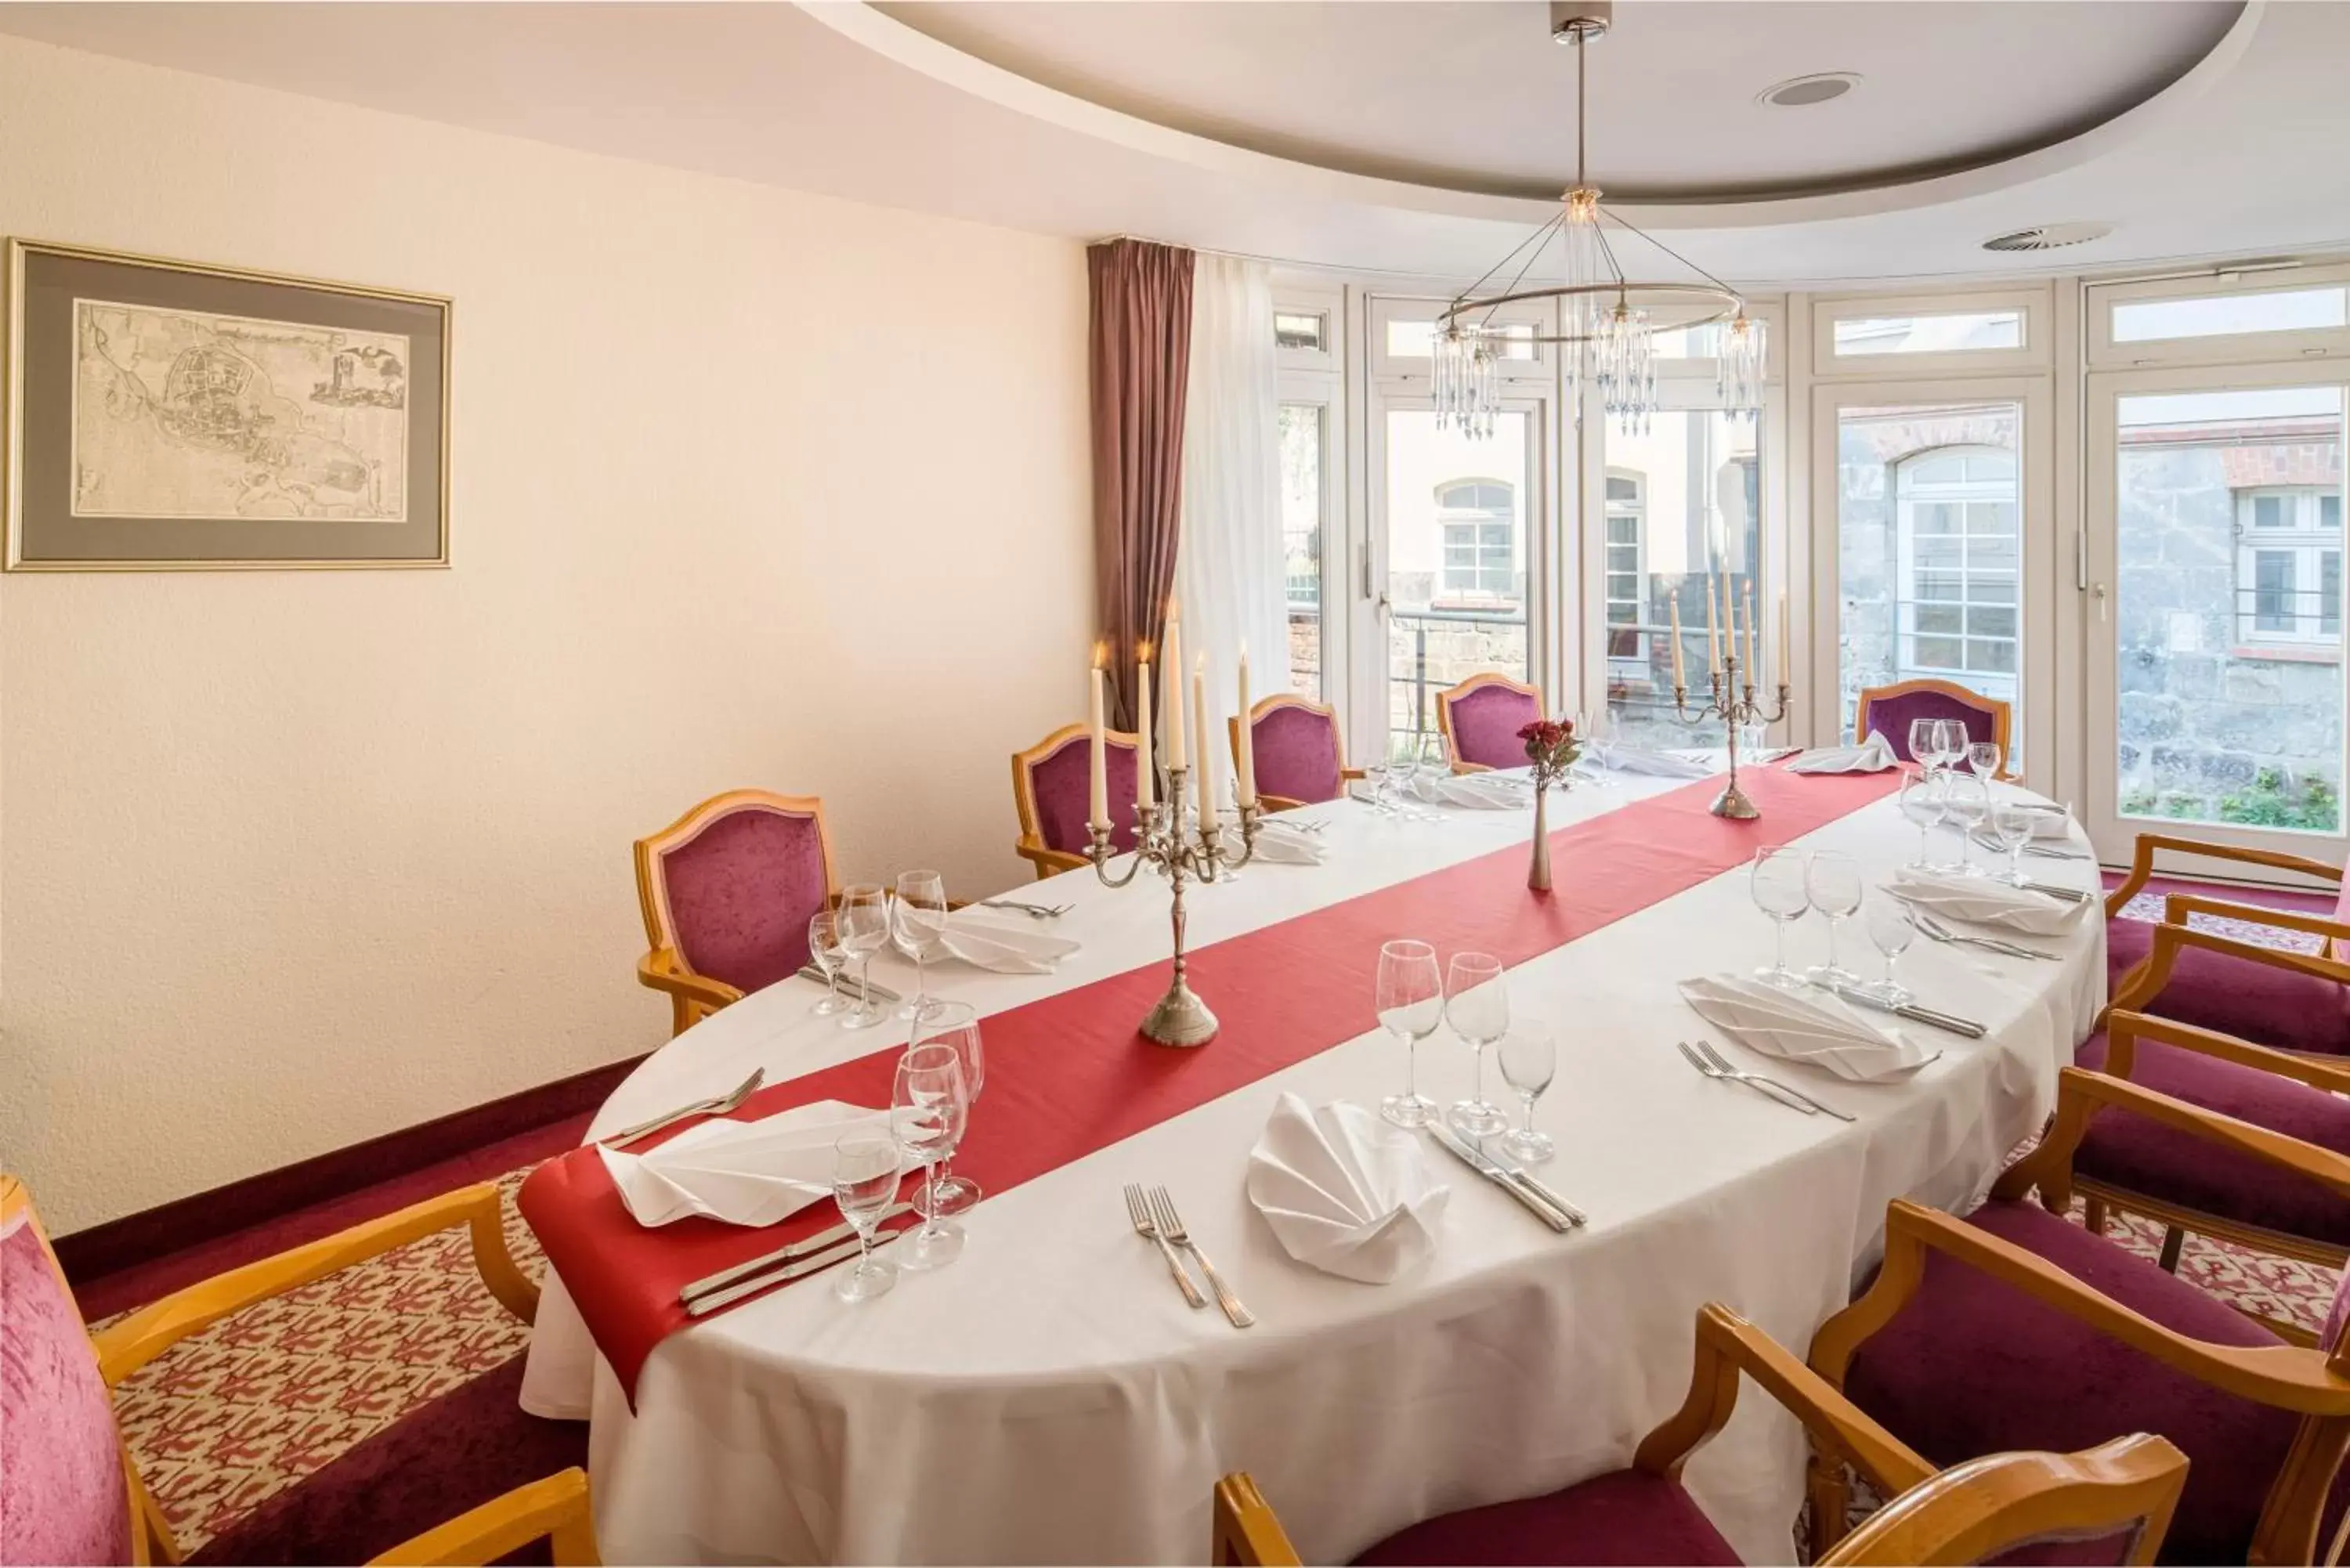 Restaurant/places to eat in Best Western Hotel Schlossmühle Quedlinburg